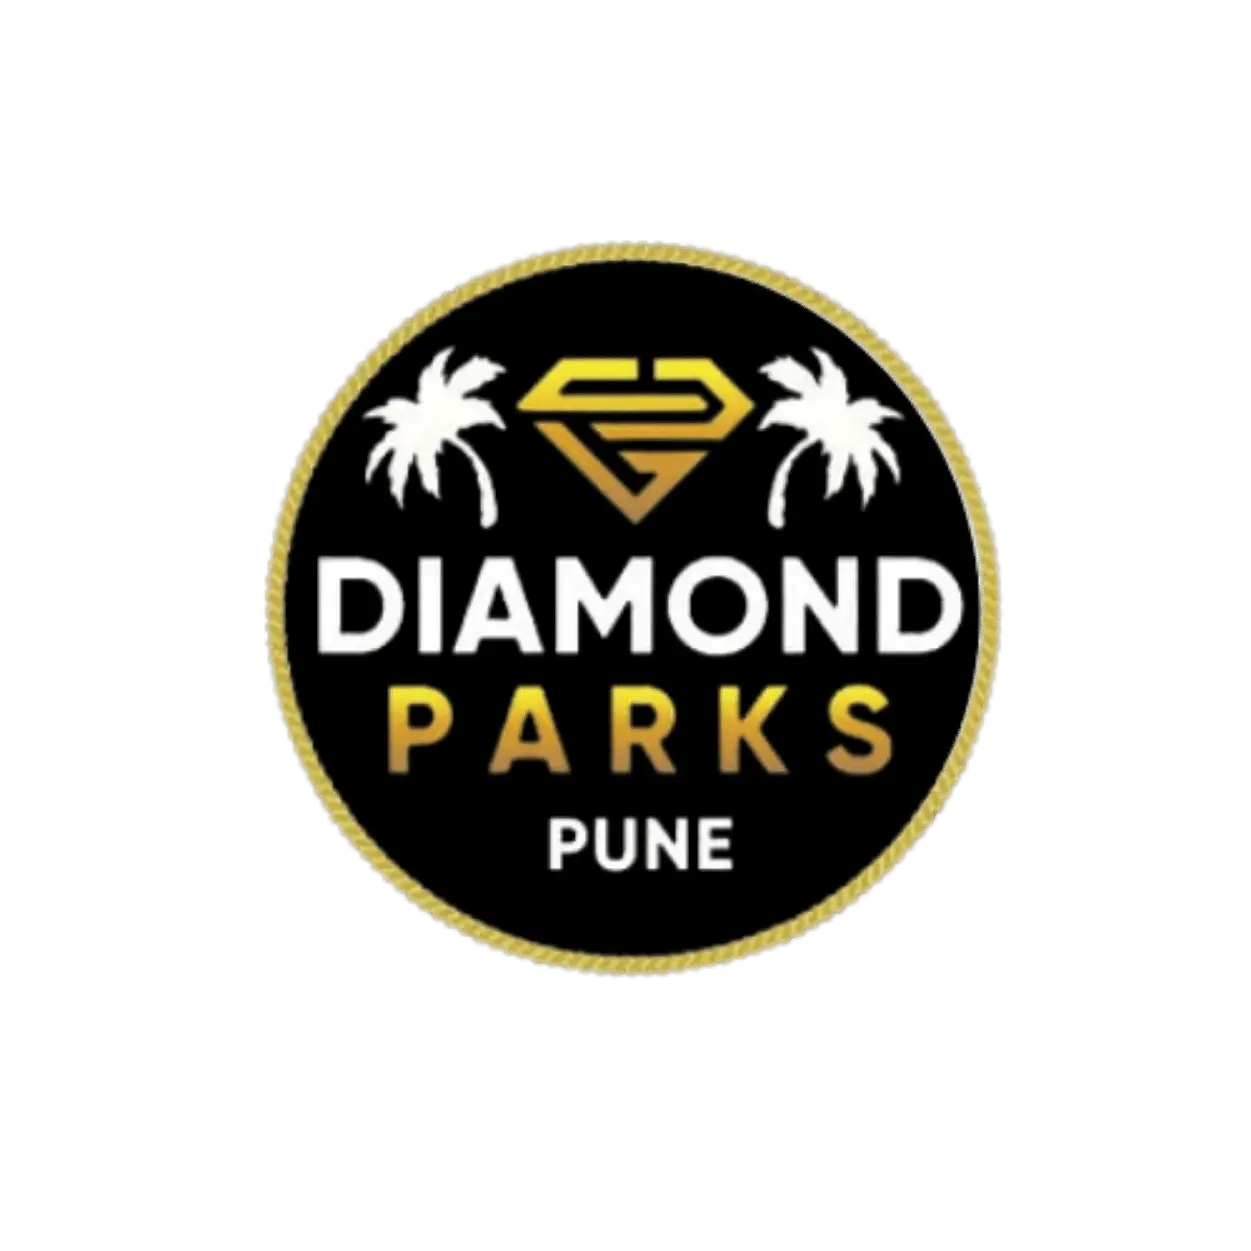 Diamond park